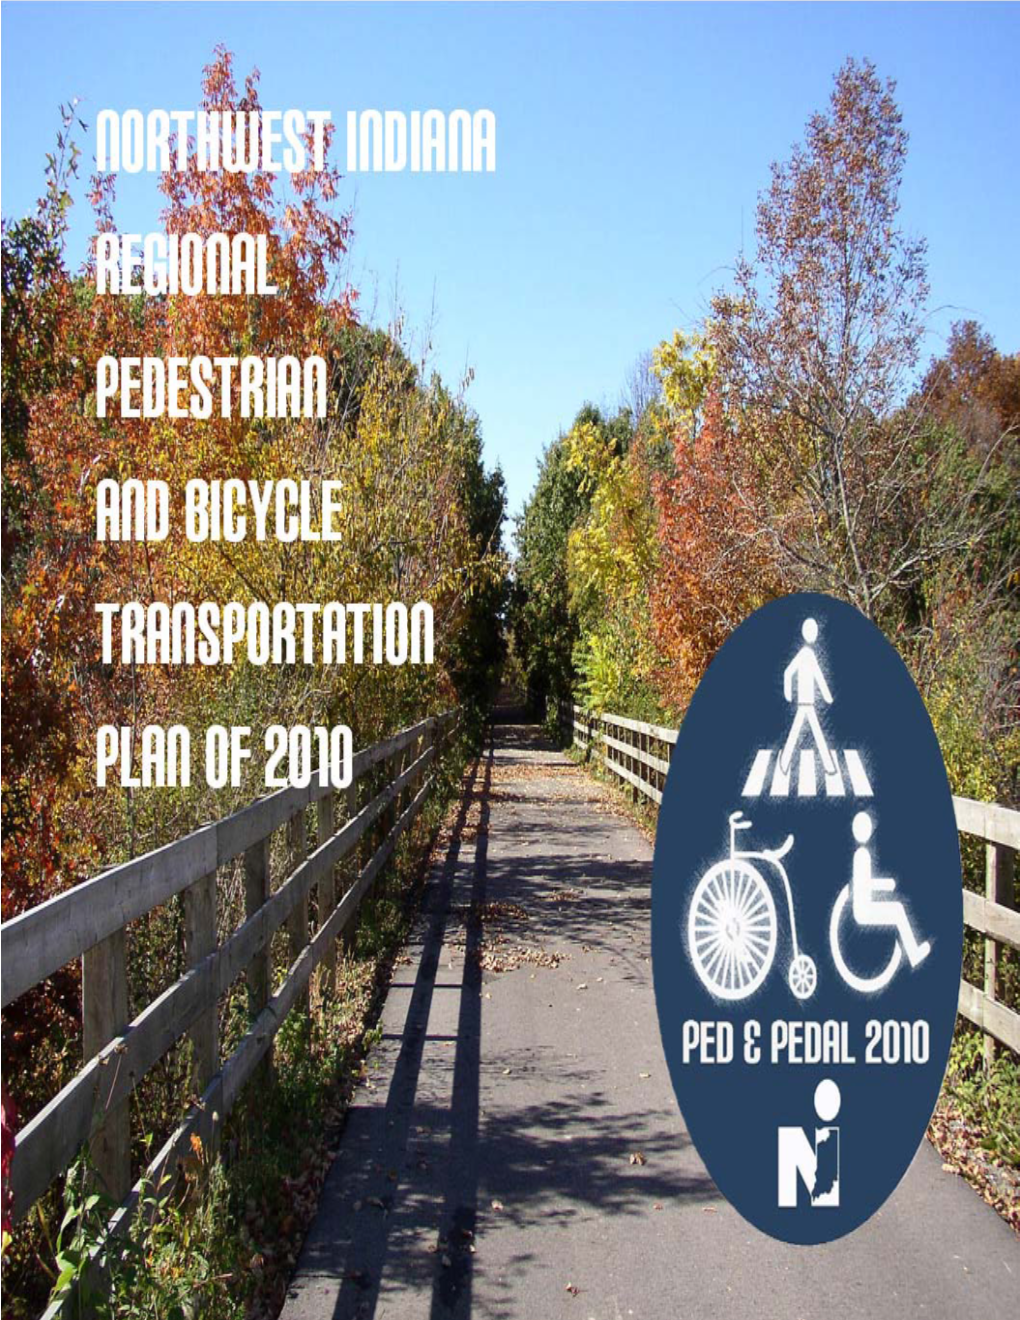 Ped & Pedal Plan 2010